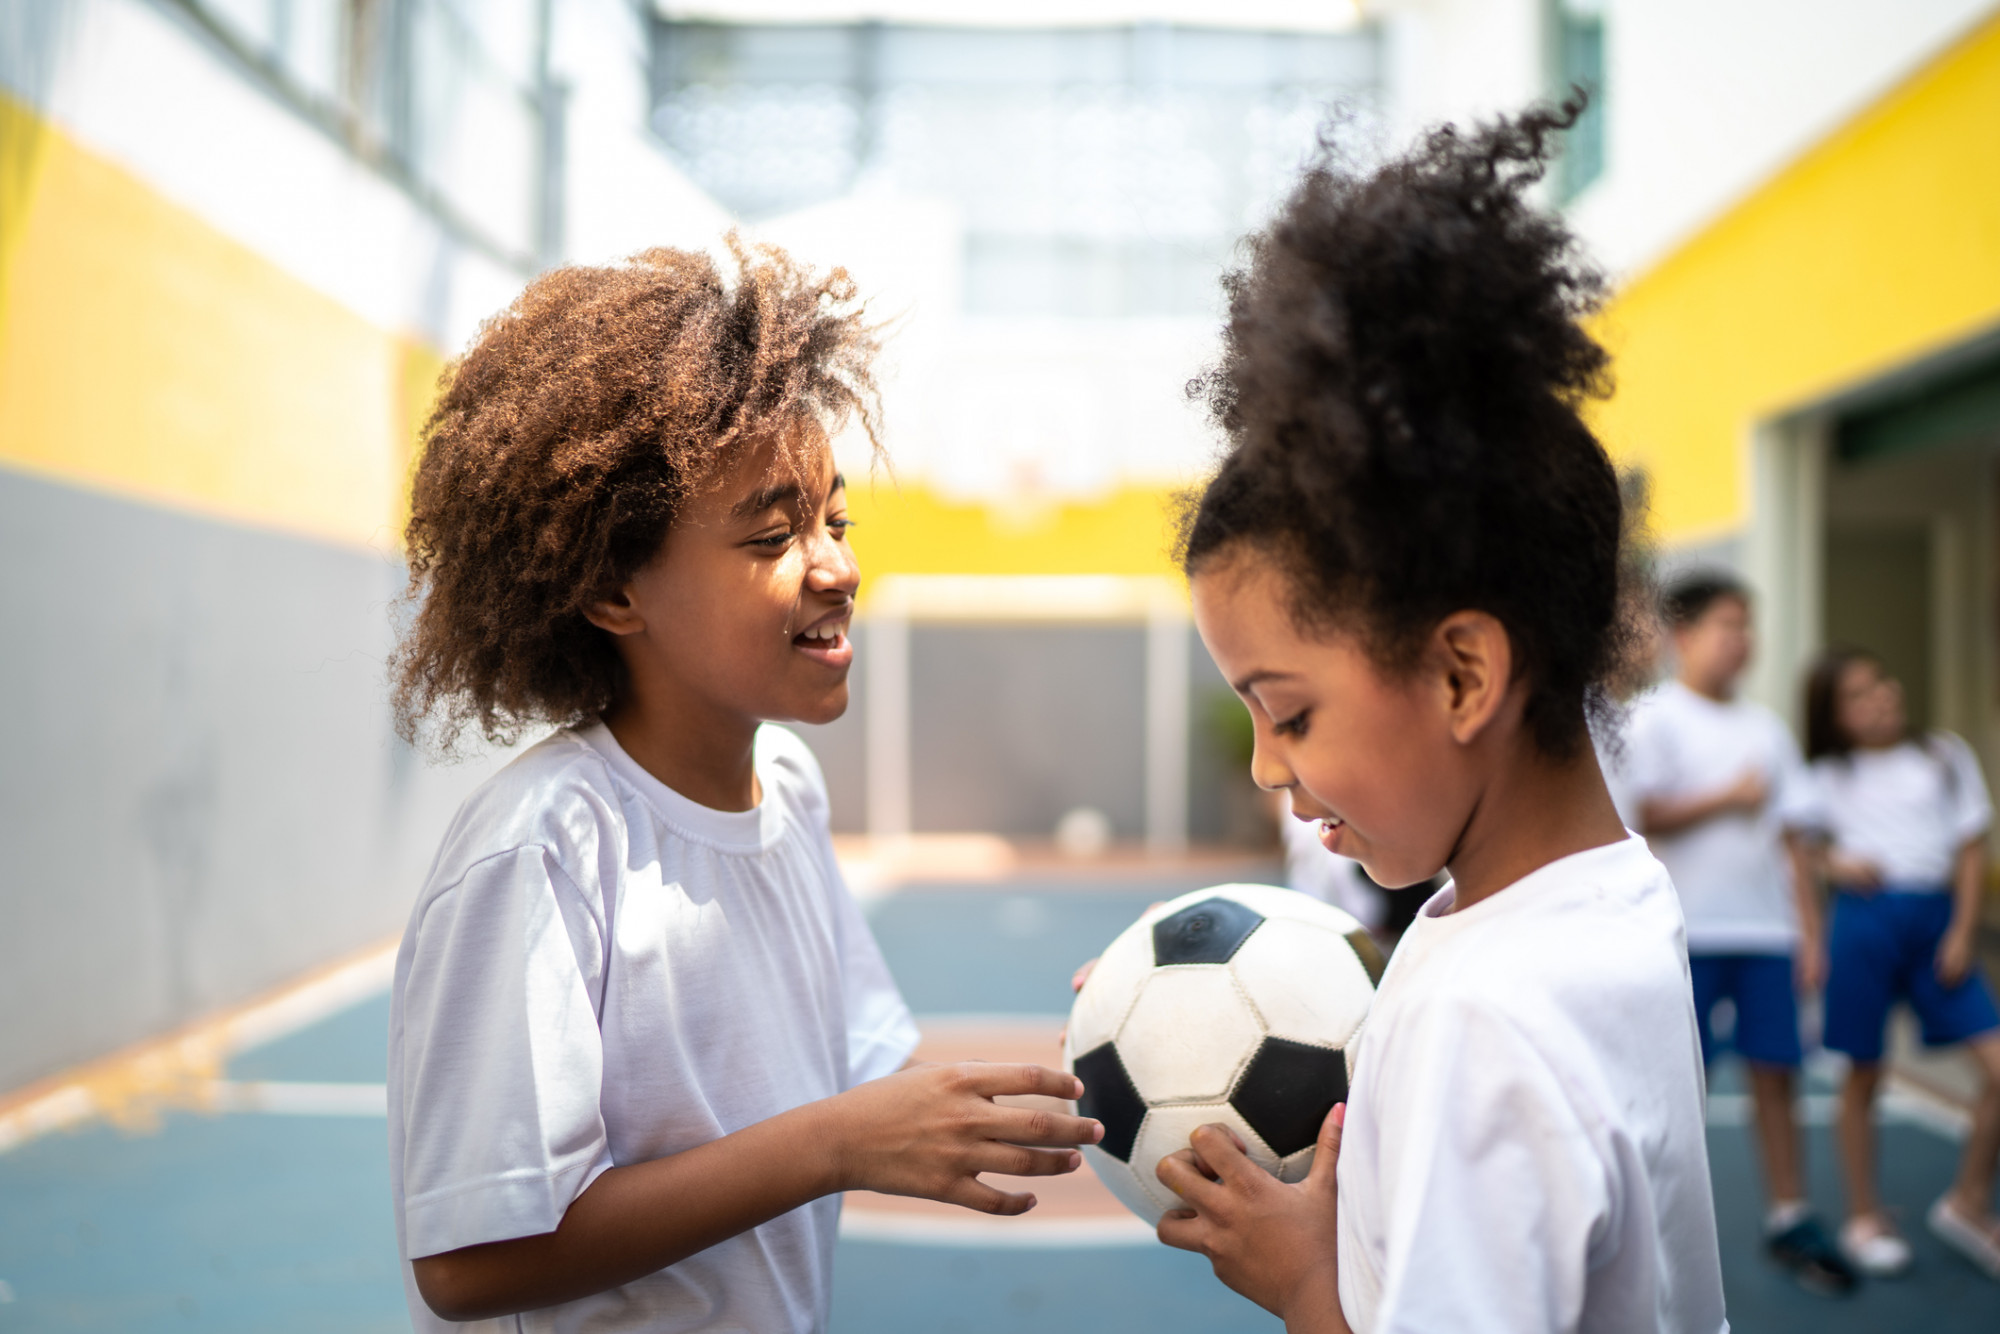 Futebol Infantil. As Crianças Estão Jogando Futebol. A Luta Ativa